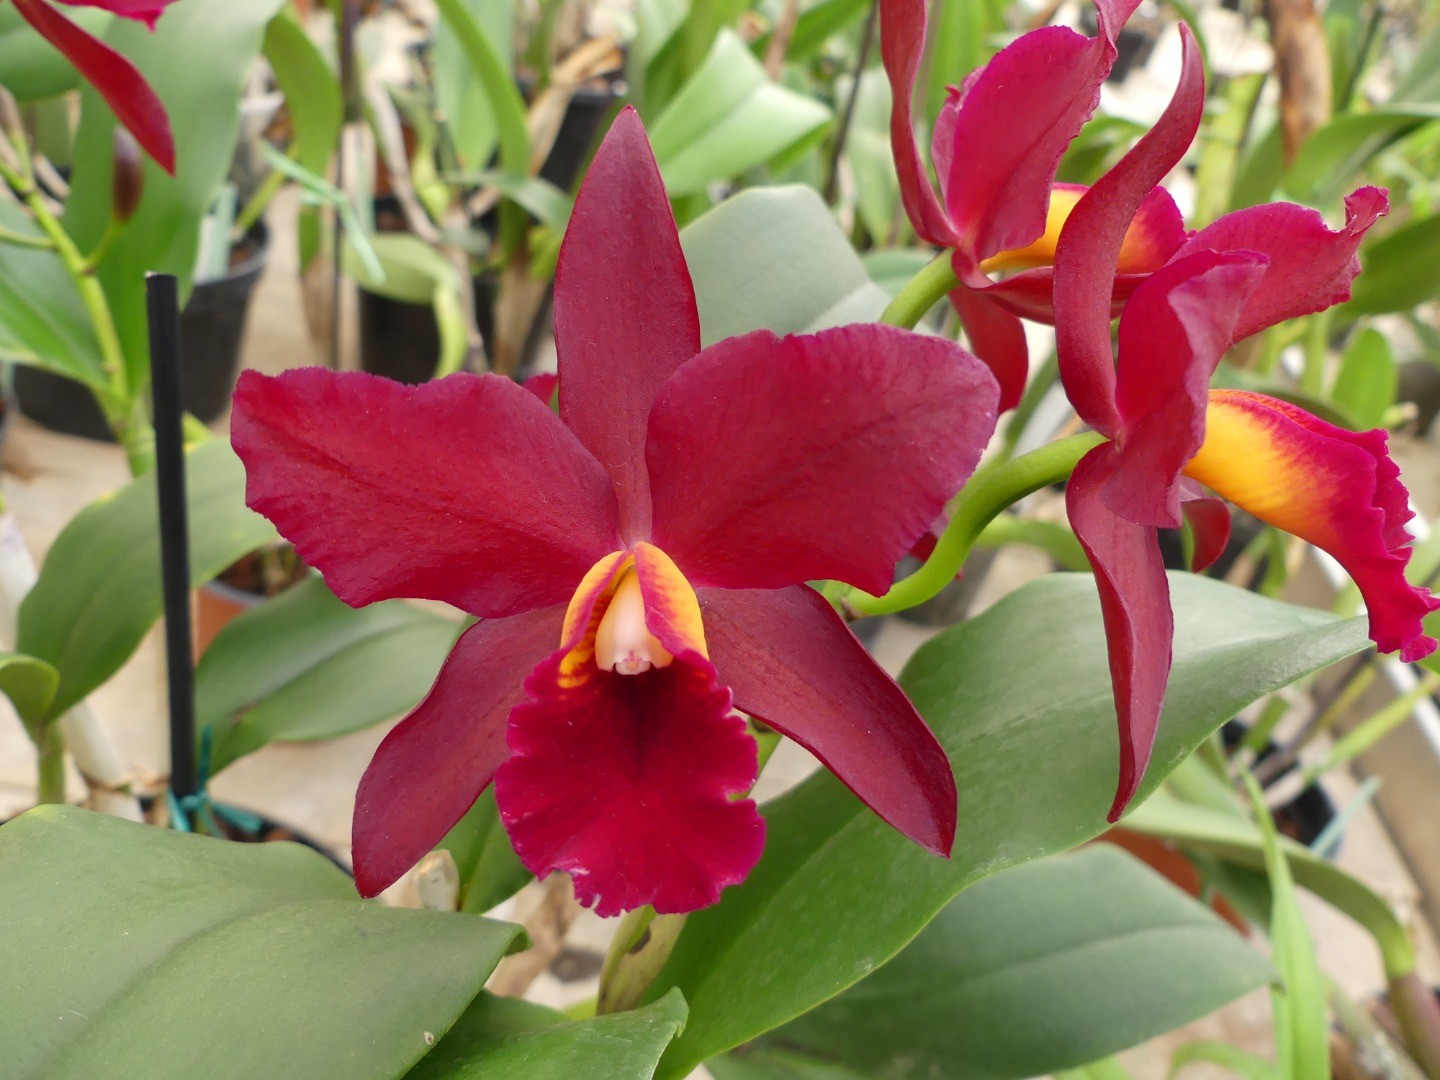 Journées Portes Ouvertes dans une serre de production d'orchidées